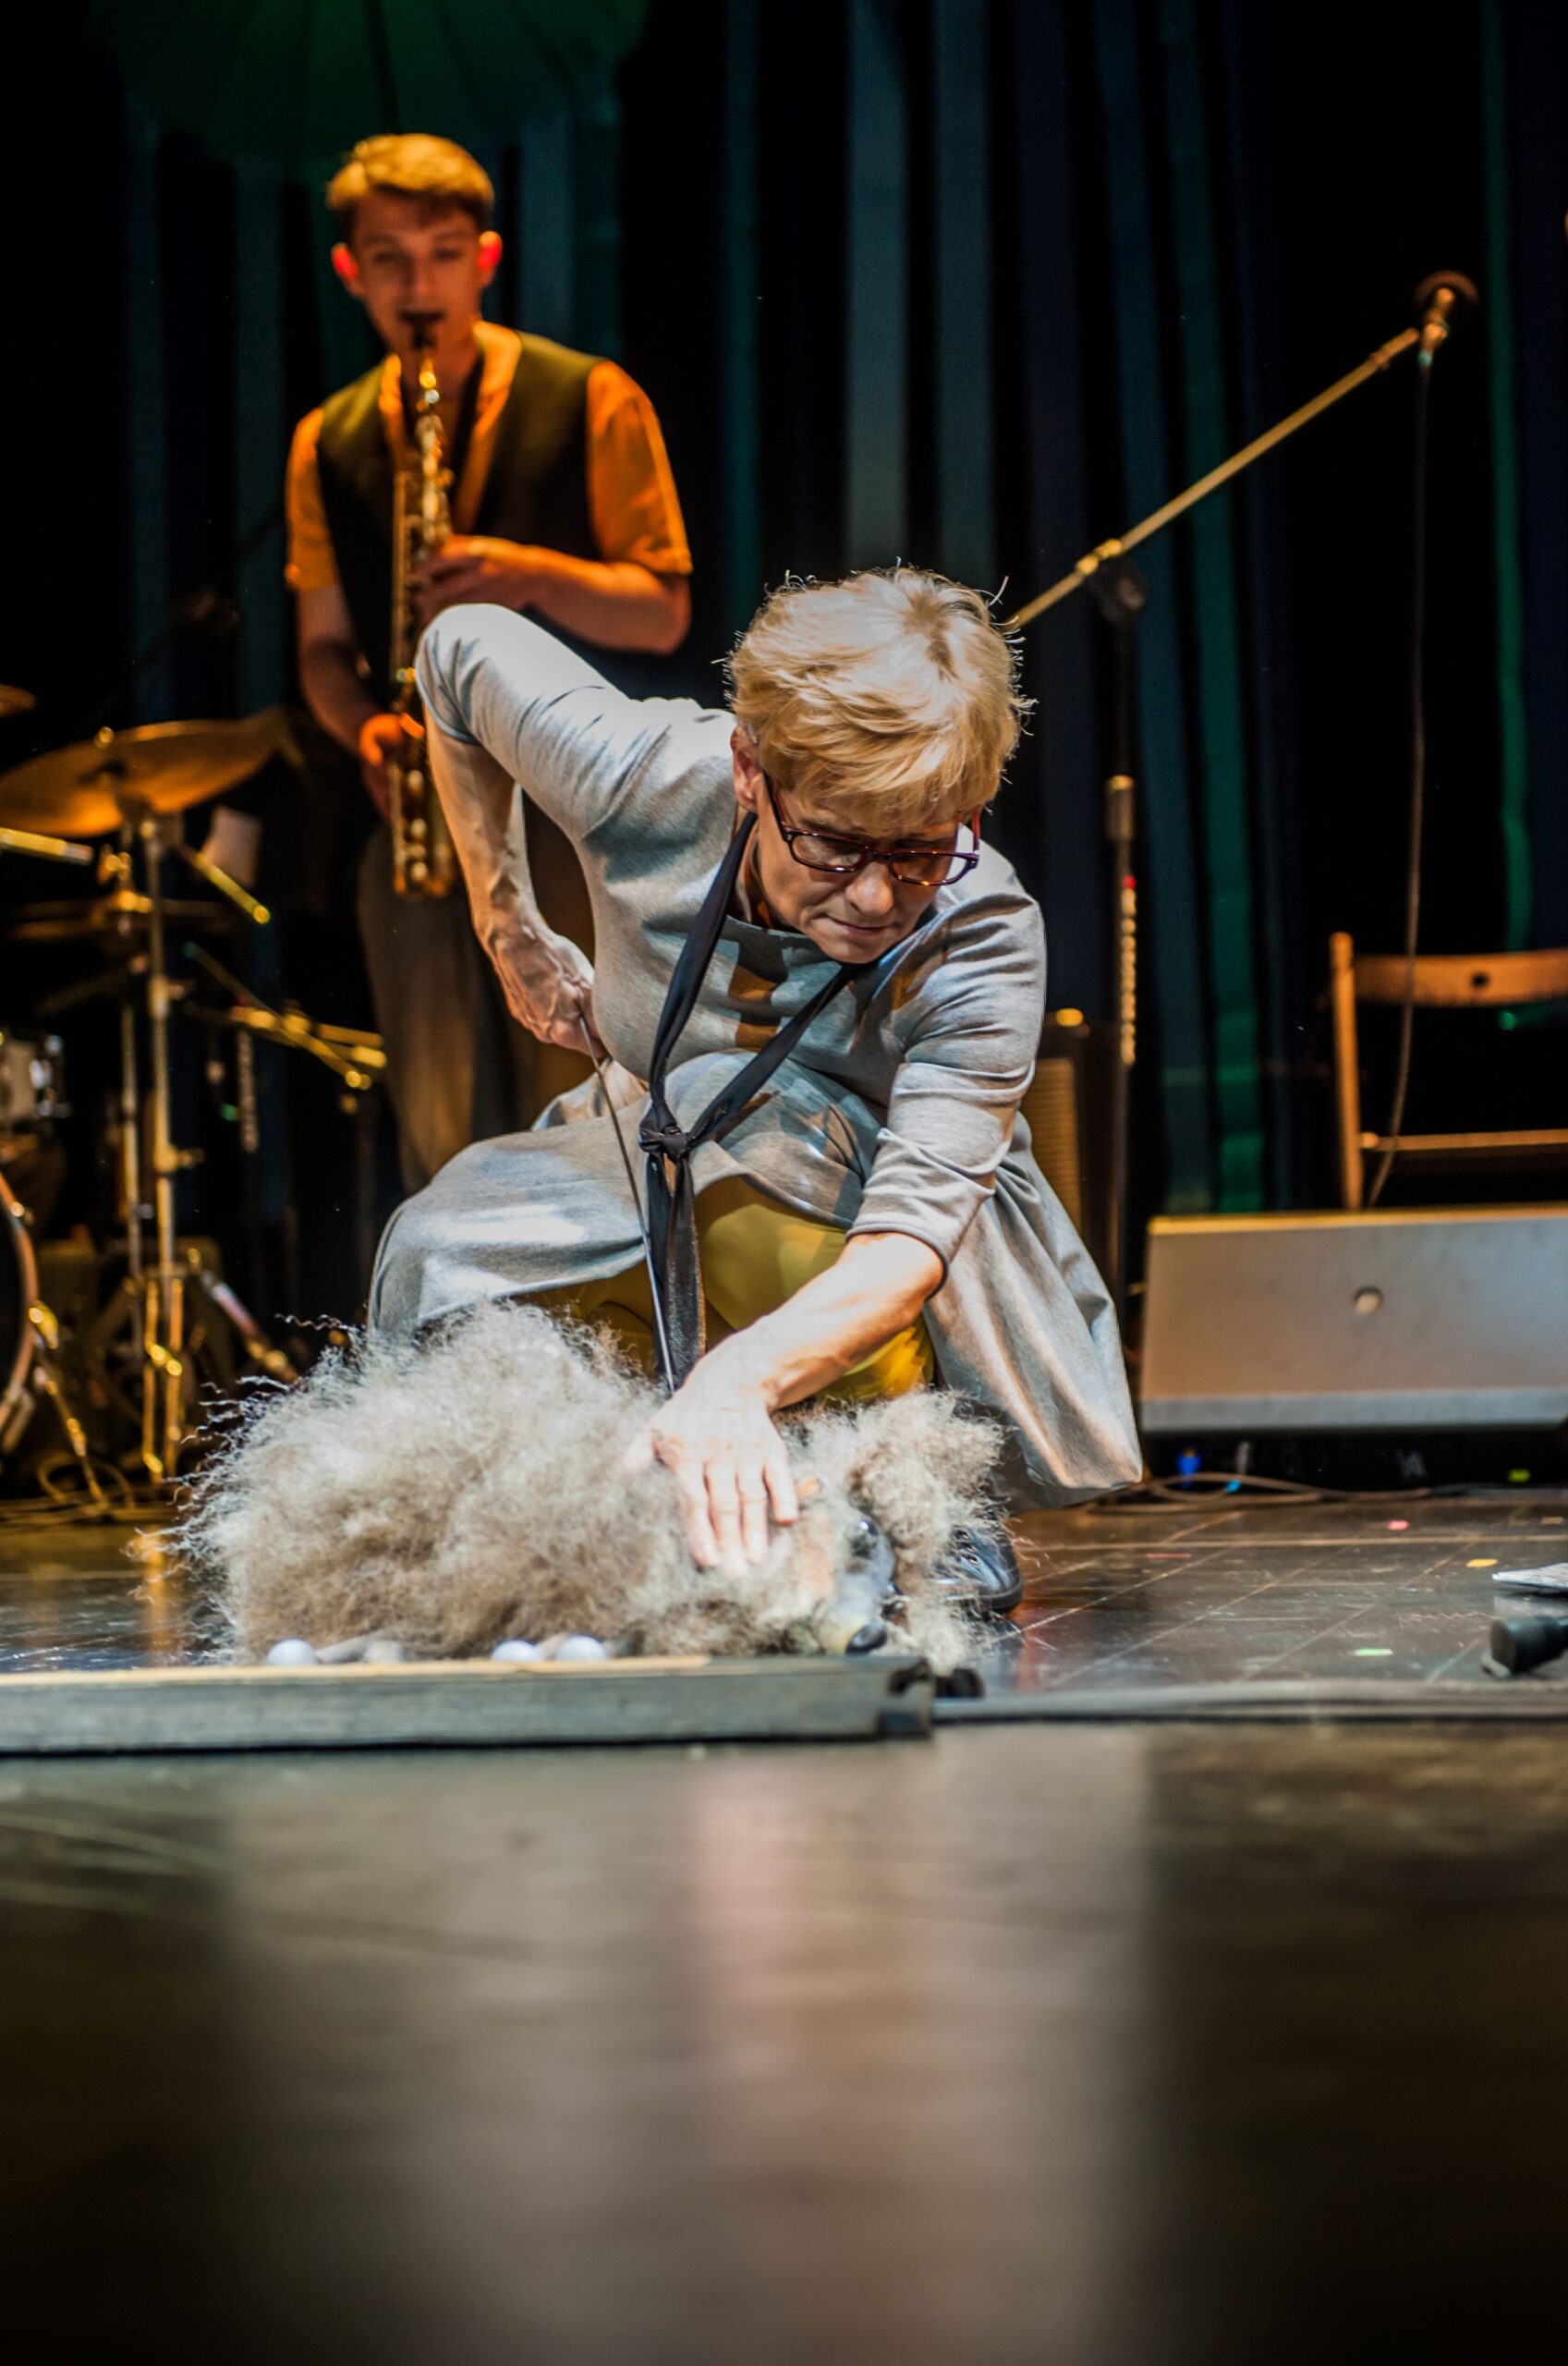 Zdjęcie ze spektaklu Wędrówka. Aktorka - blondynka w szarej sukience i okularach - schyla się nad psem pudlem. Pies jest naprawdę lalką teatralną trzymaną przez aktorkę. W tle widać grającego saksofonistę.